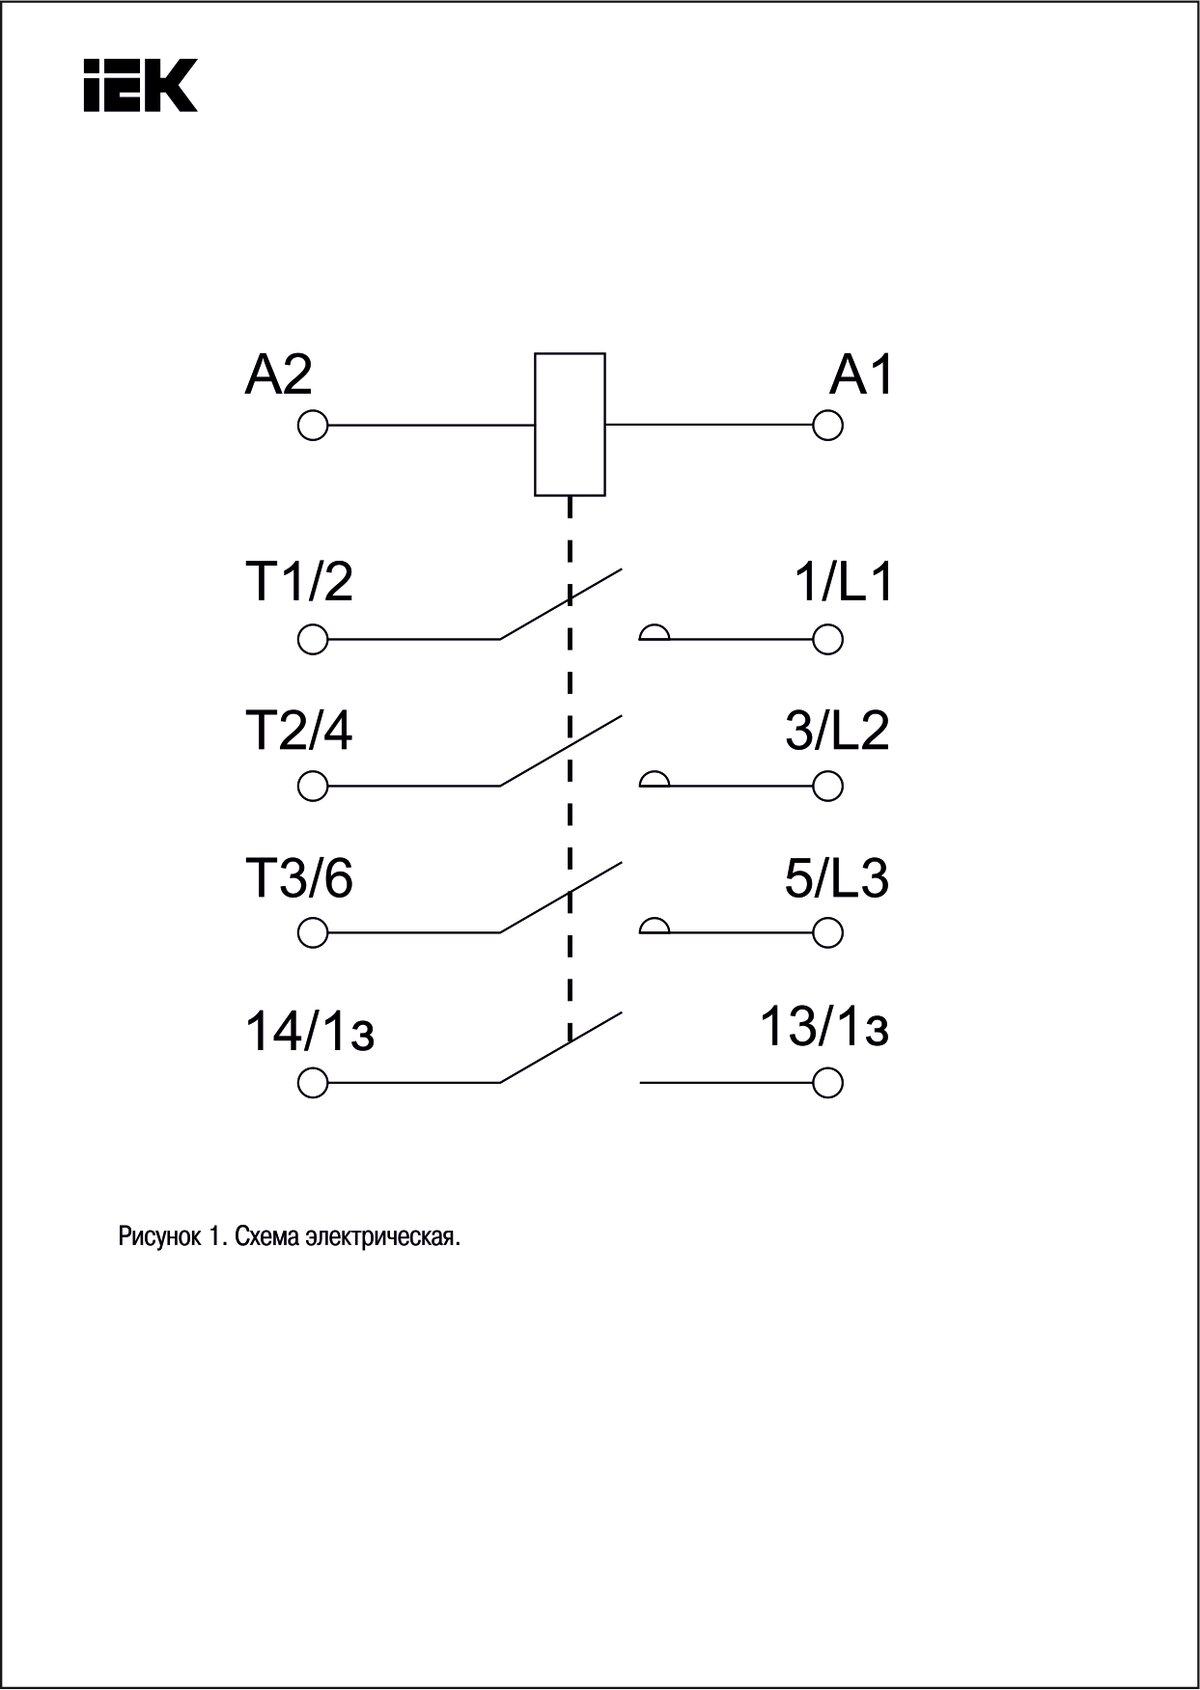 Схема подключения концевого выключателя к пускателю